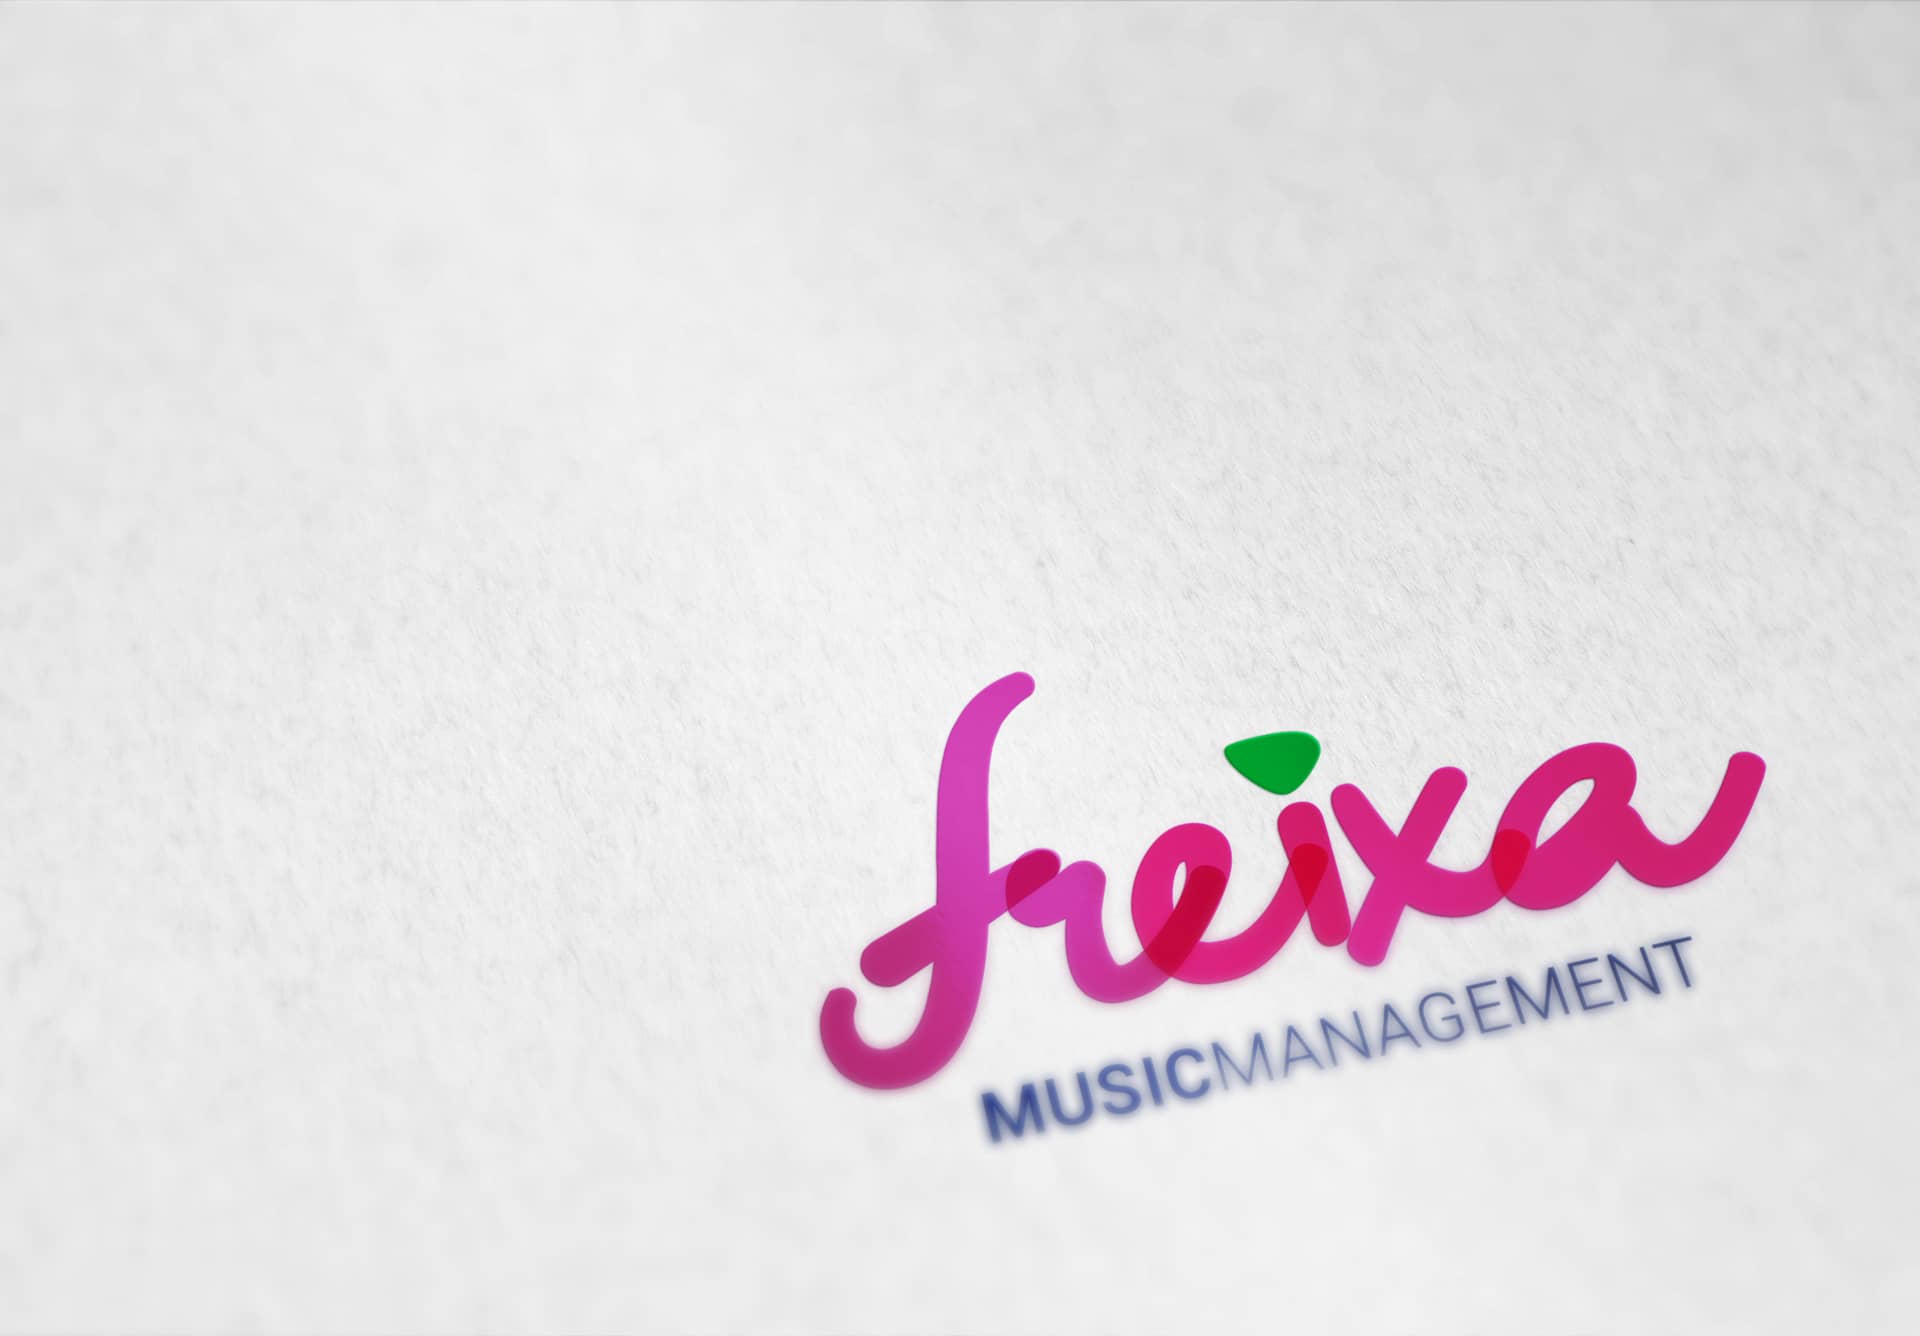 Logotipo Freixa Music rosa sobre papel blanco branding por The Acctitude